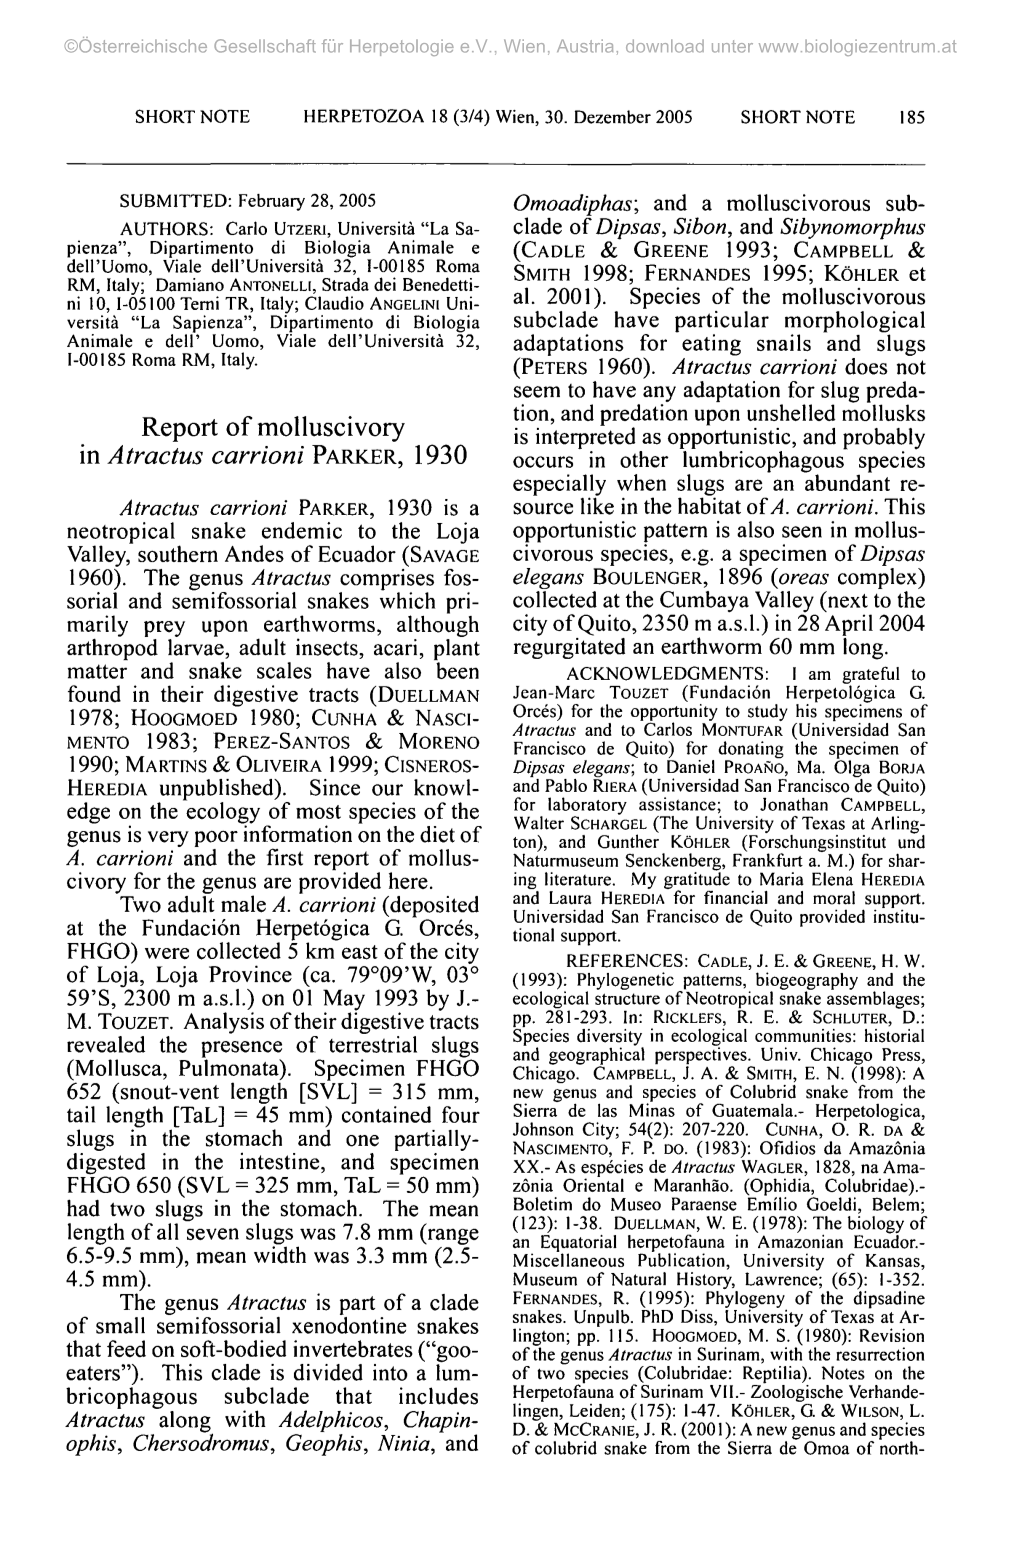 Report of Molluscivory in Atractus Carrioni PARKER, 1930